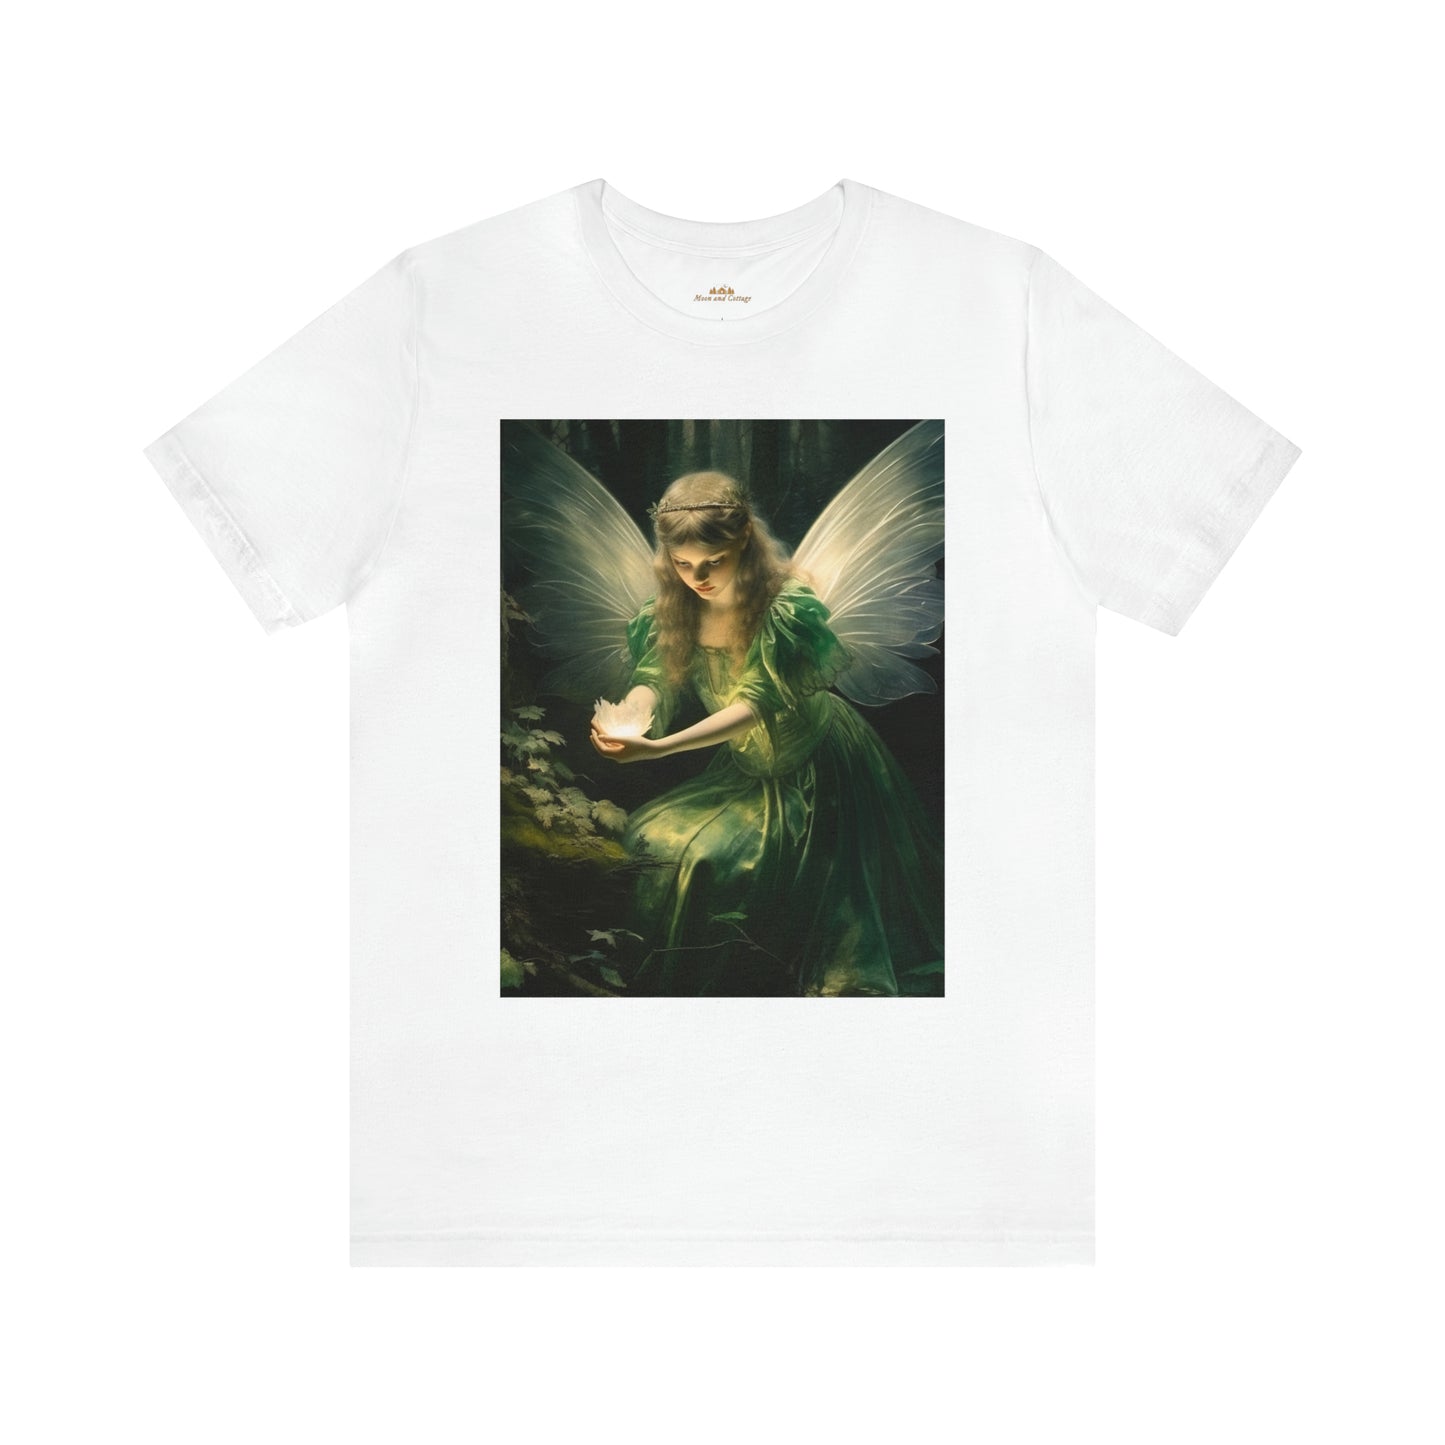 Cottagecore Fairy Forest Printed Y2k T-Shirt - Fairycore Grunge Short Sleeve and Crewneck Shirt - Boho Aesthetic Unisex Tee